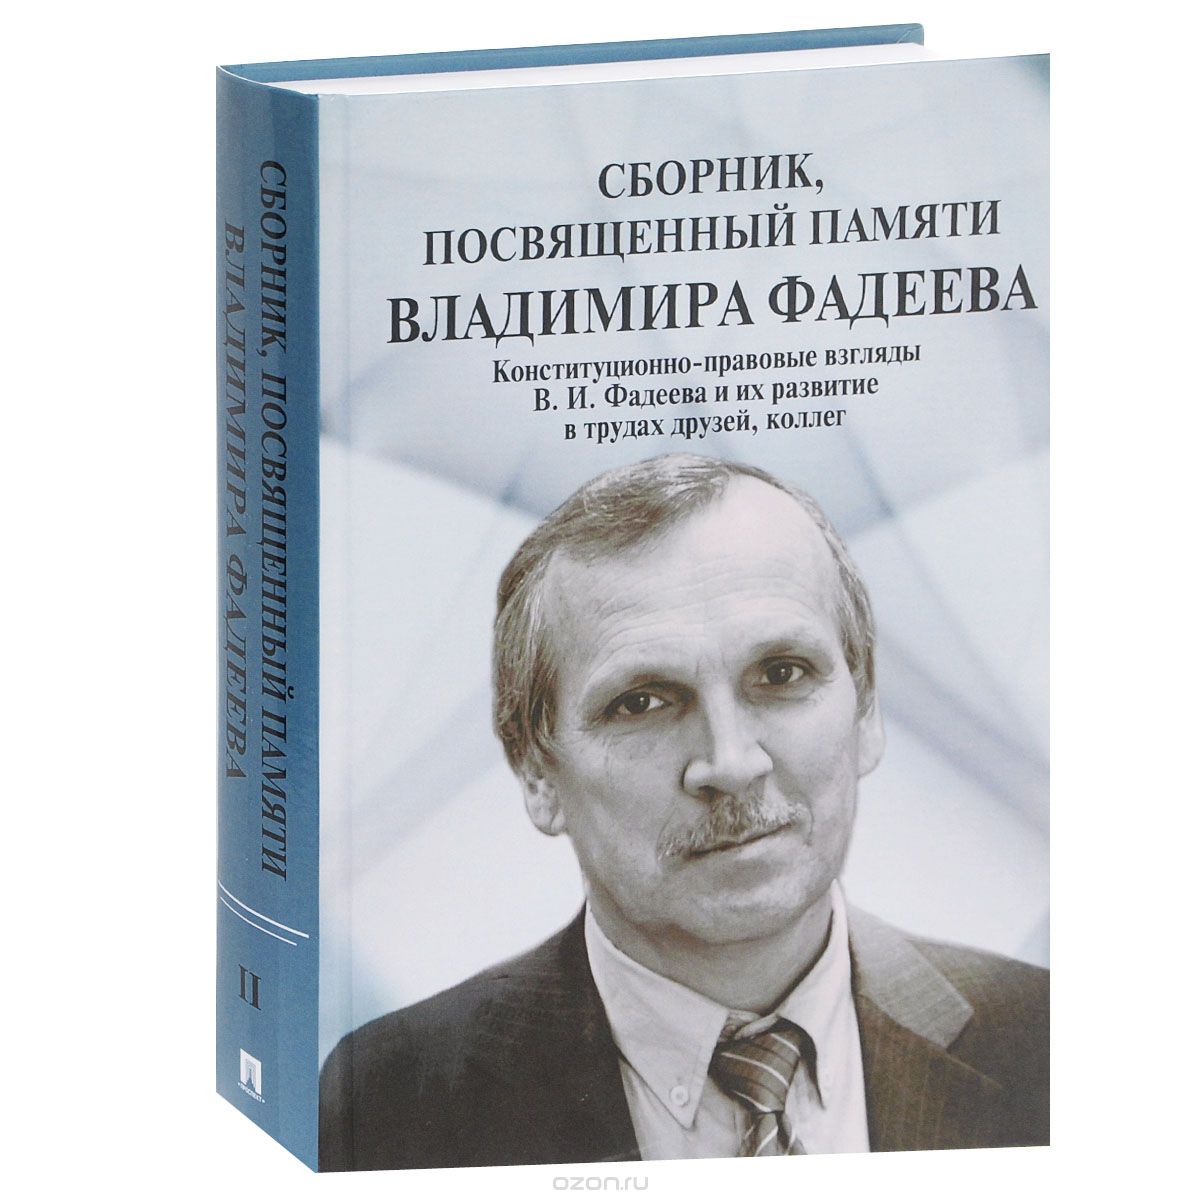 Сборник, посвященный памяти Владимира Фадеева. Том 2